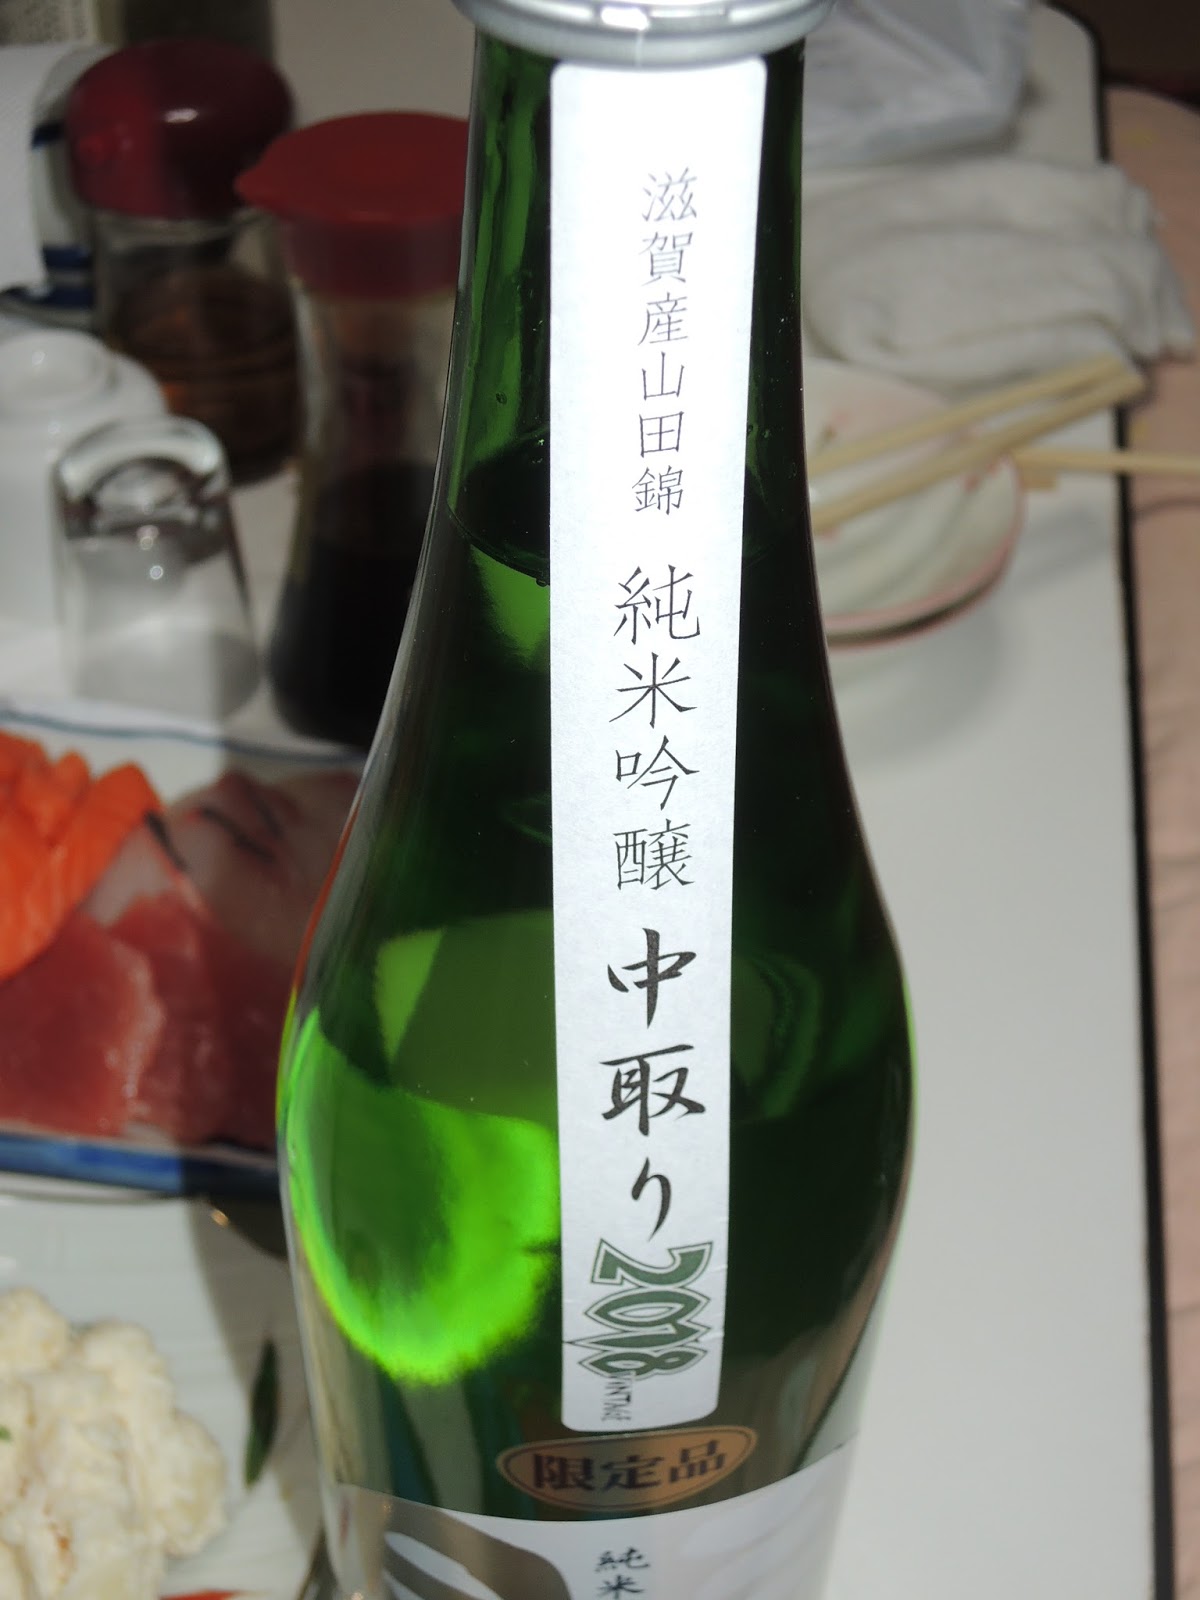 日本酒パラダイス: 三連星(白)純米吟醸中取りを実家で